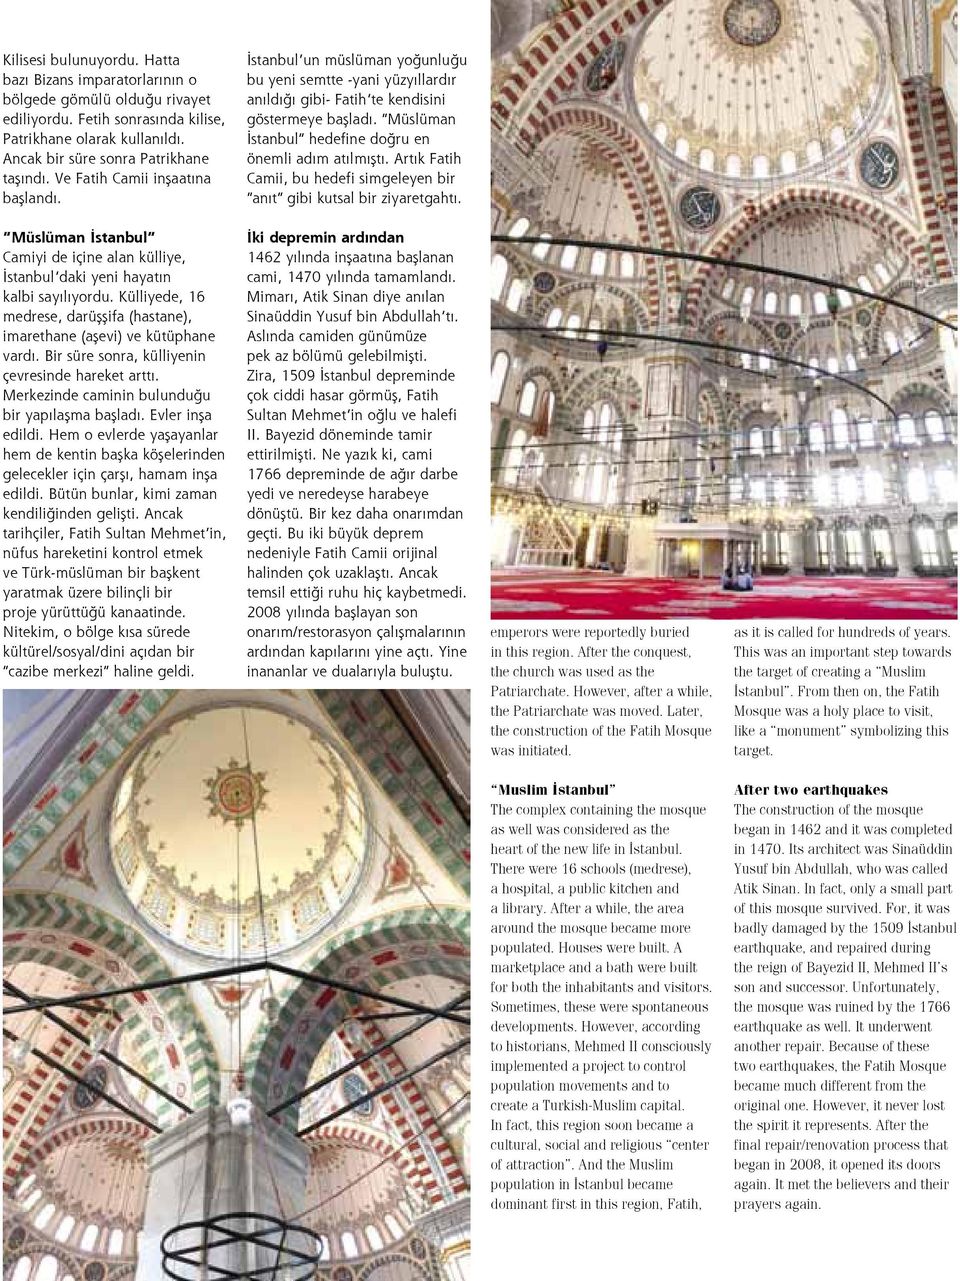 Müslüman İstanbul hedefine doğru en önemli adım atılmıştı. Artık Fatih Camii, bu hedefi simgeleyen bir anıt gibi kutsal bir ziyaretgahtı.